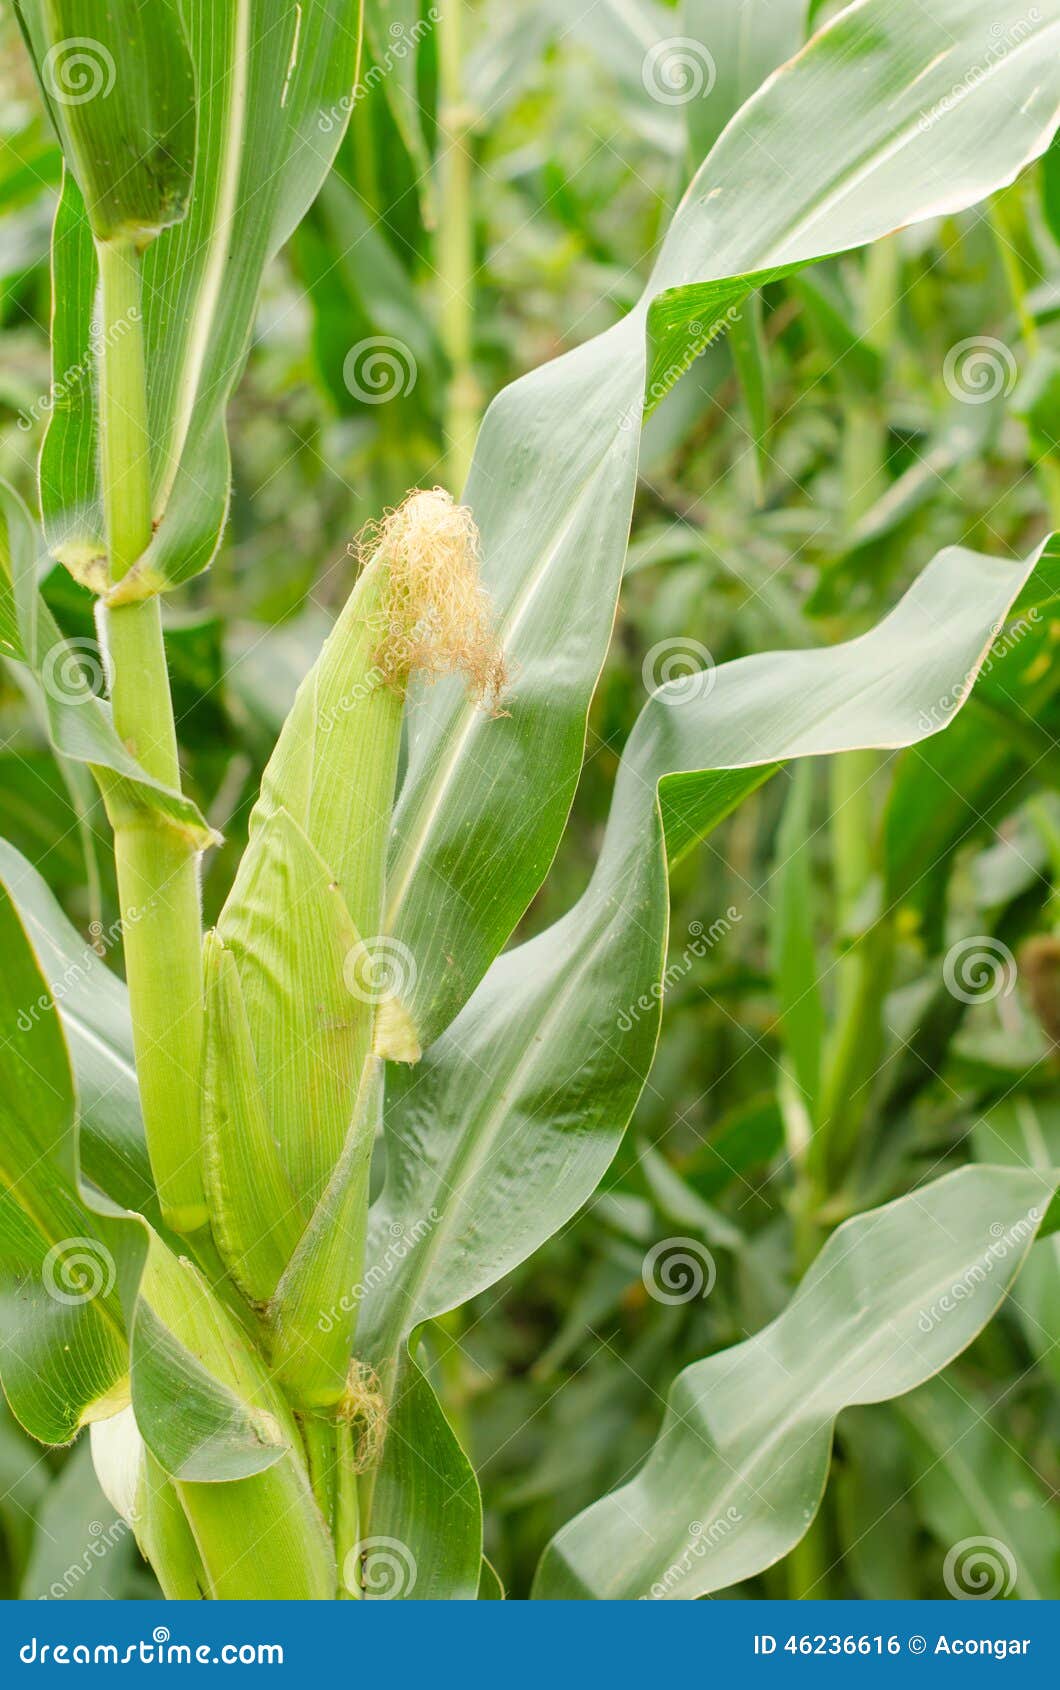 corn cob